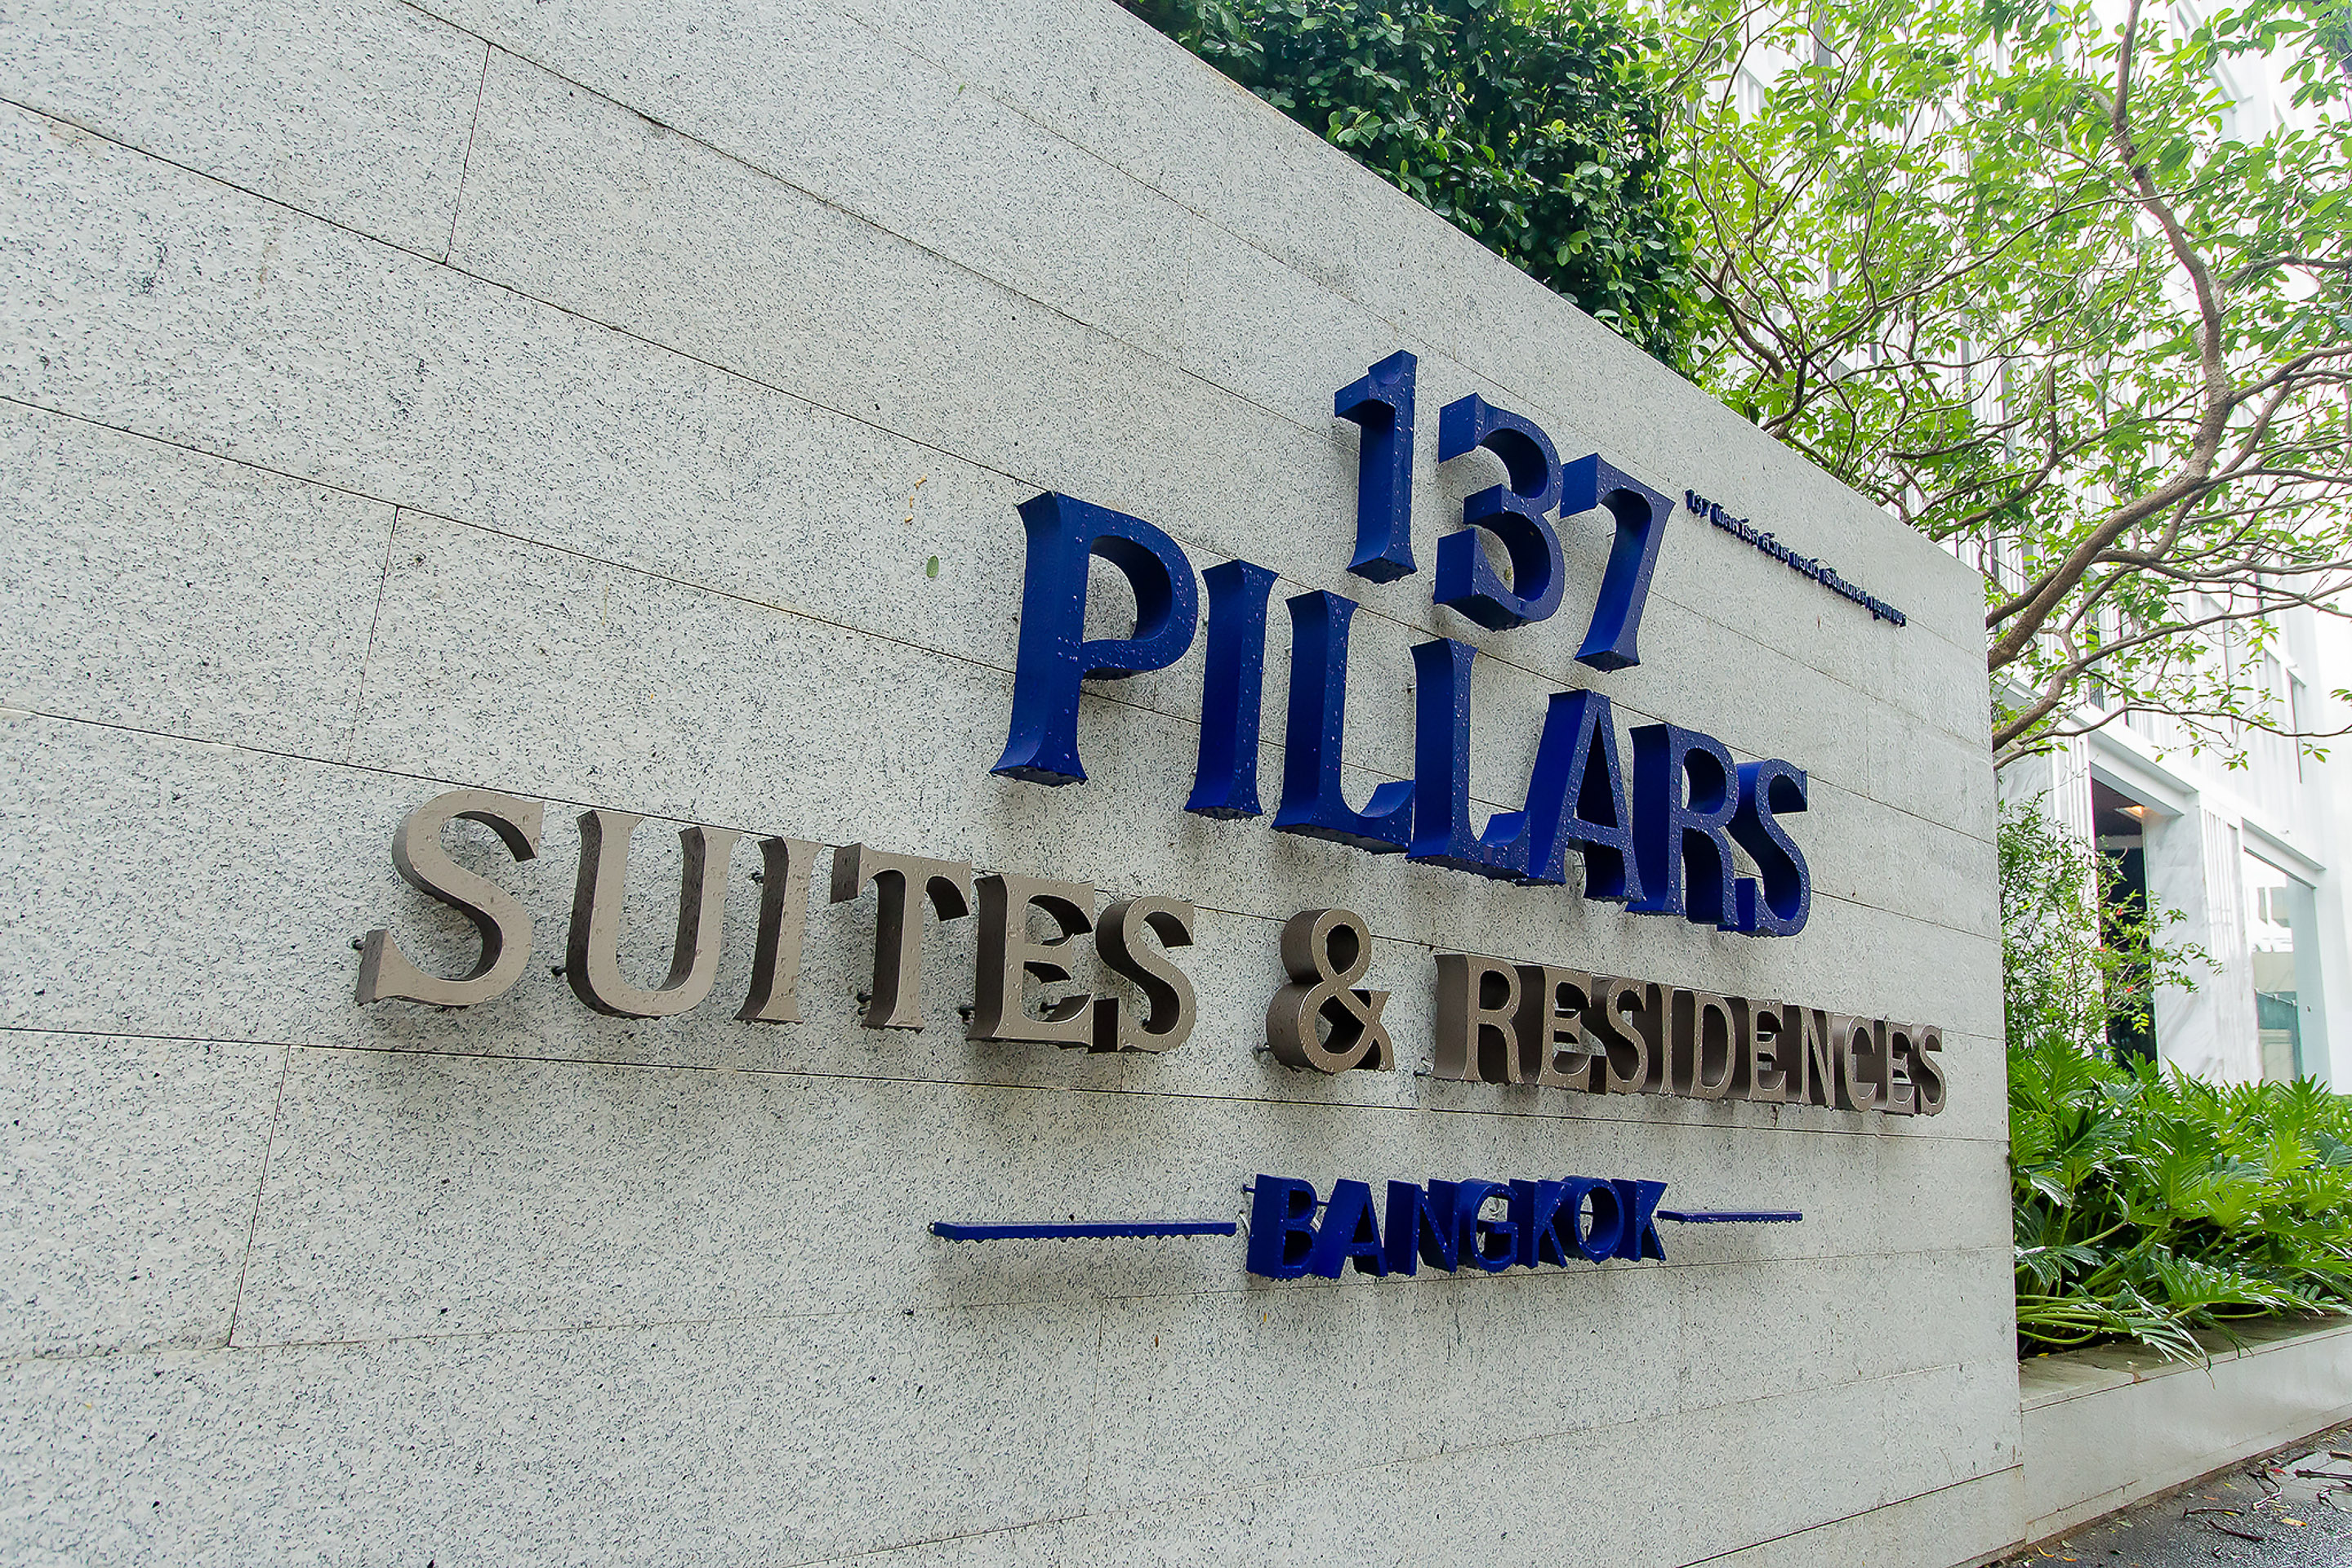 HARMAN 专业音视系统为曼谷 137 柱套房酒店和公寓提供优质多区域音响系统